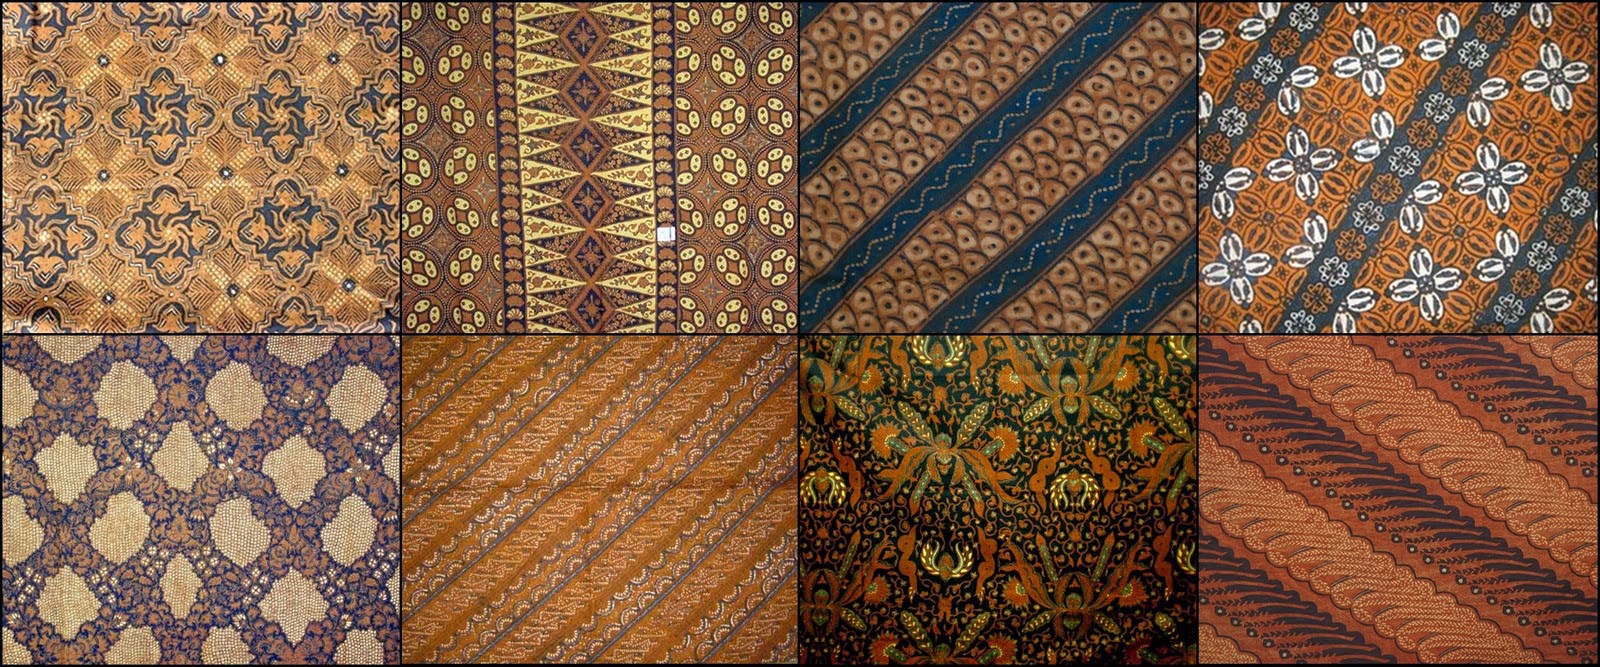 kesenian daerah batik jawa tengah